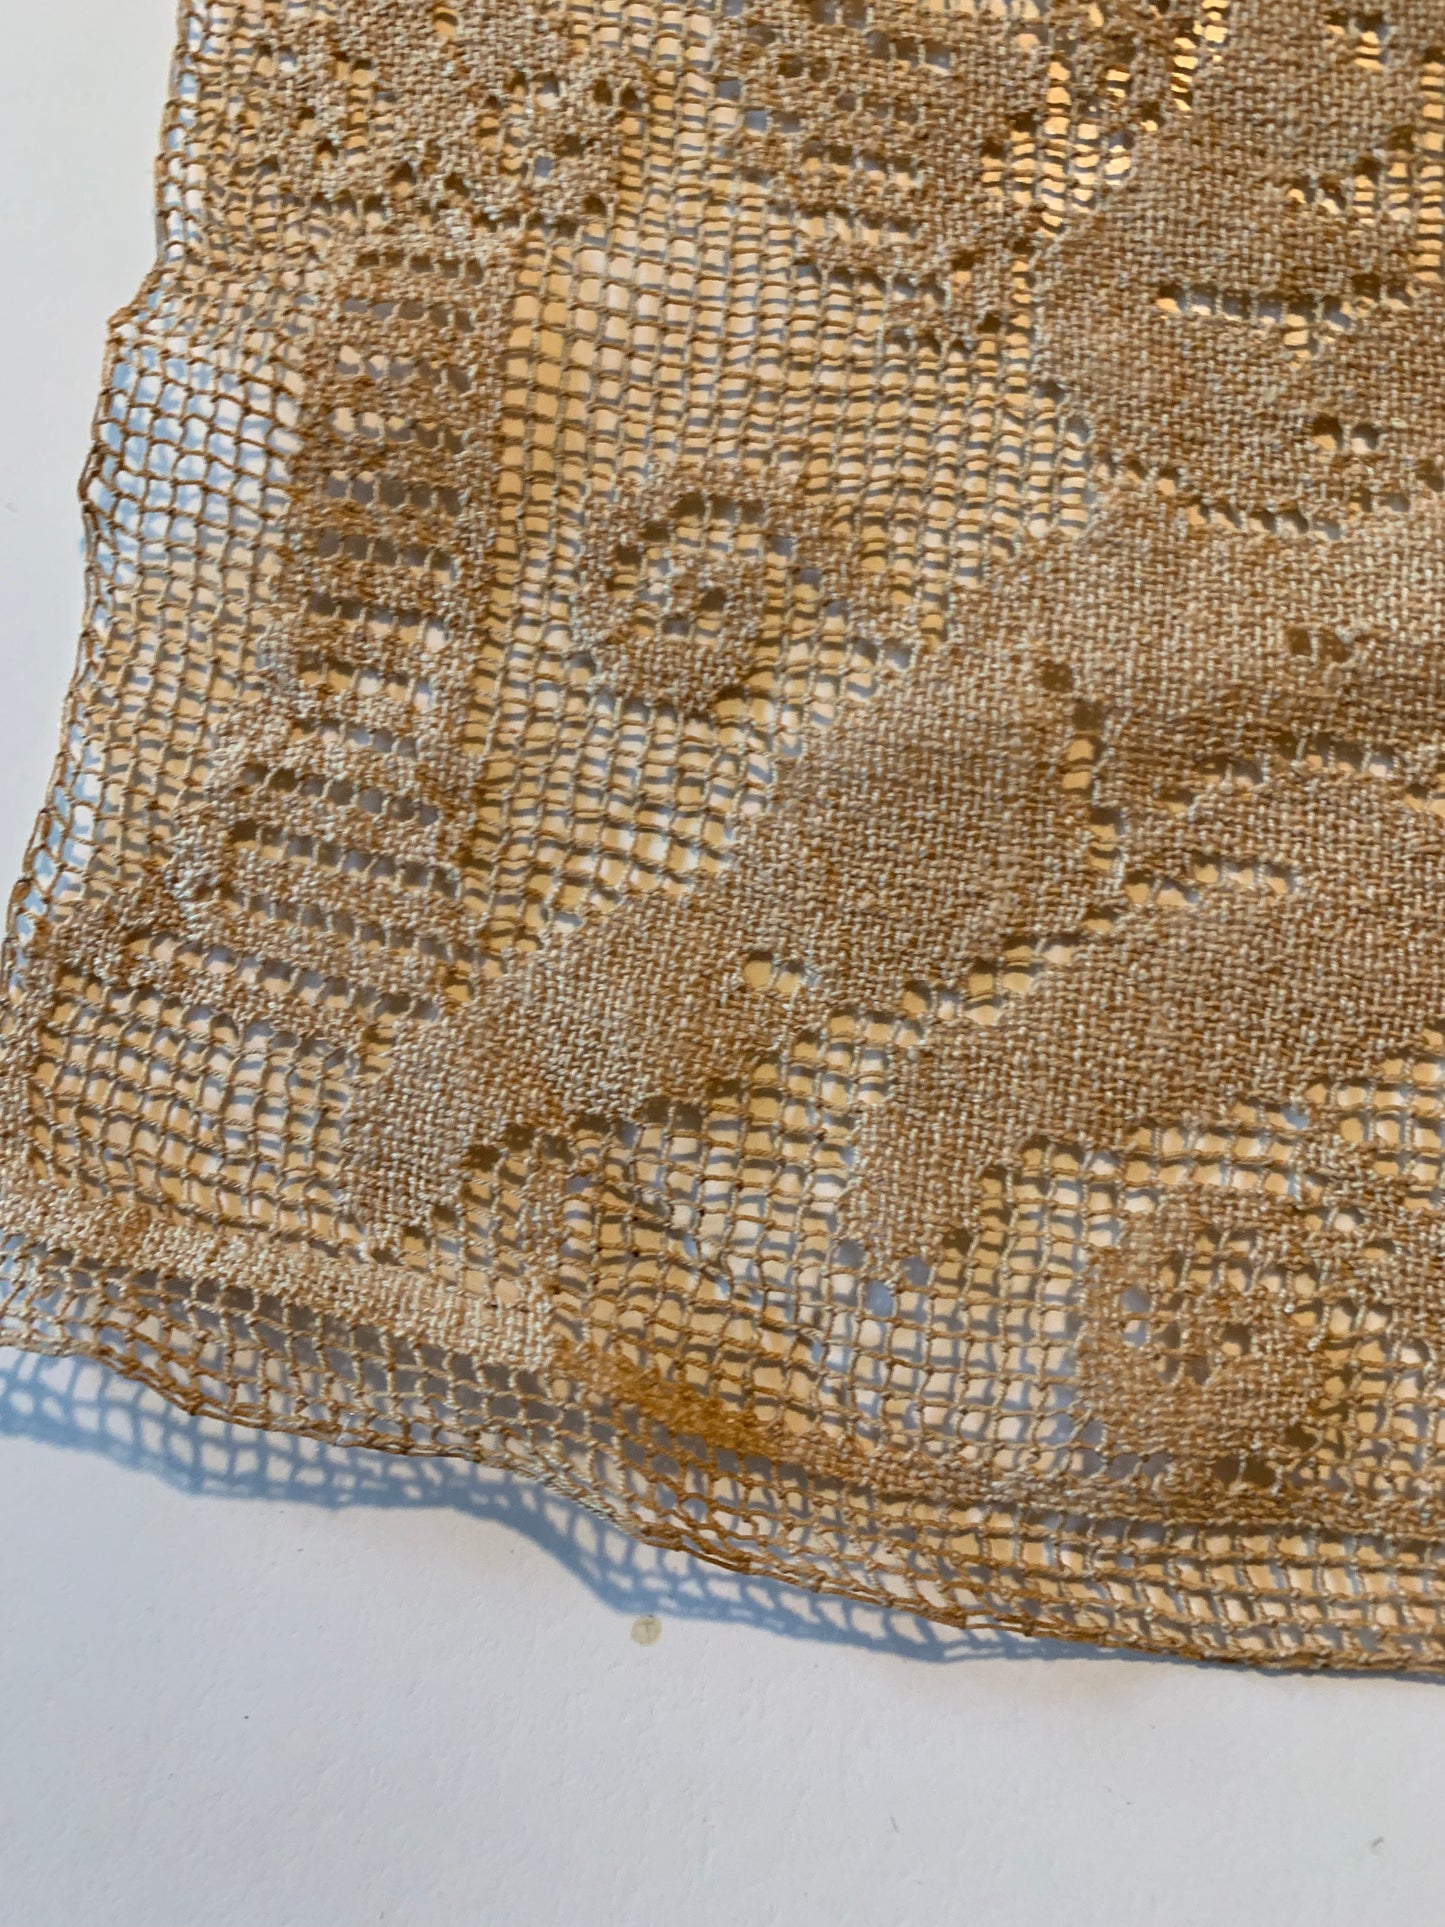 Cherub Filet Lace Panel circa 1900